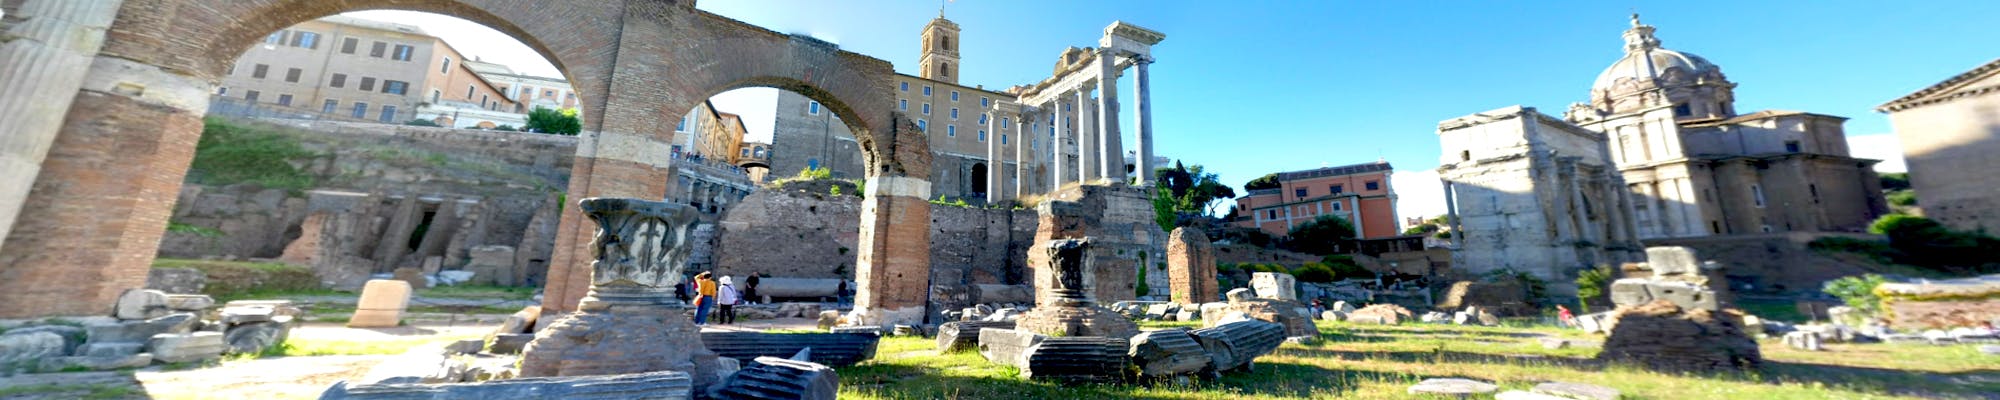 Visite virtuelle du Forum romain depuis chez vous